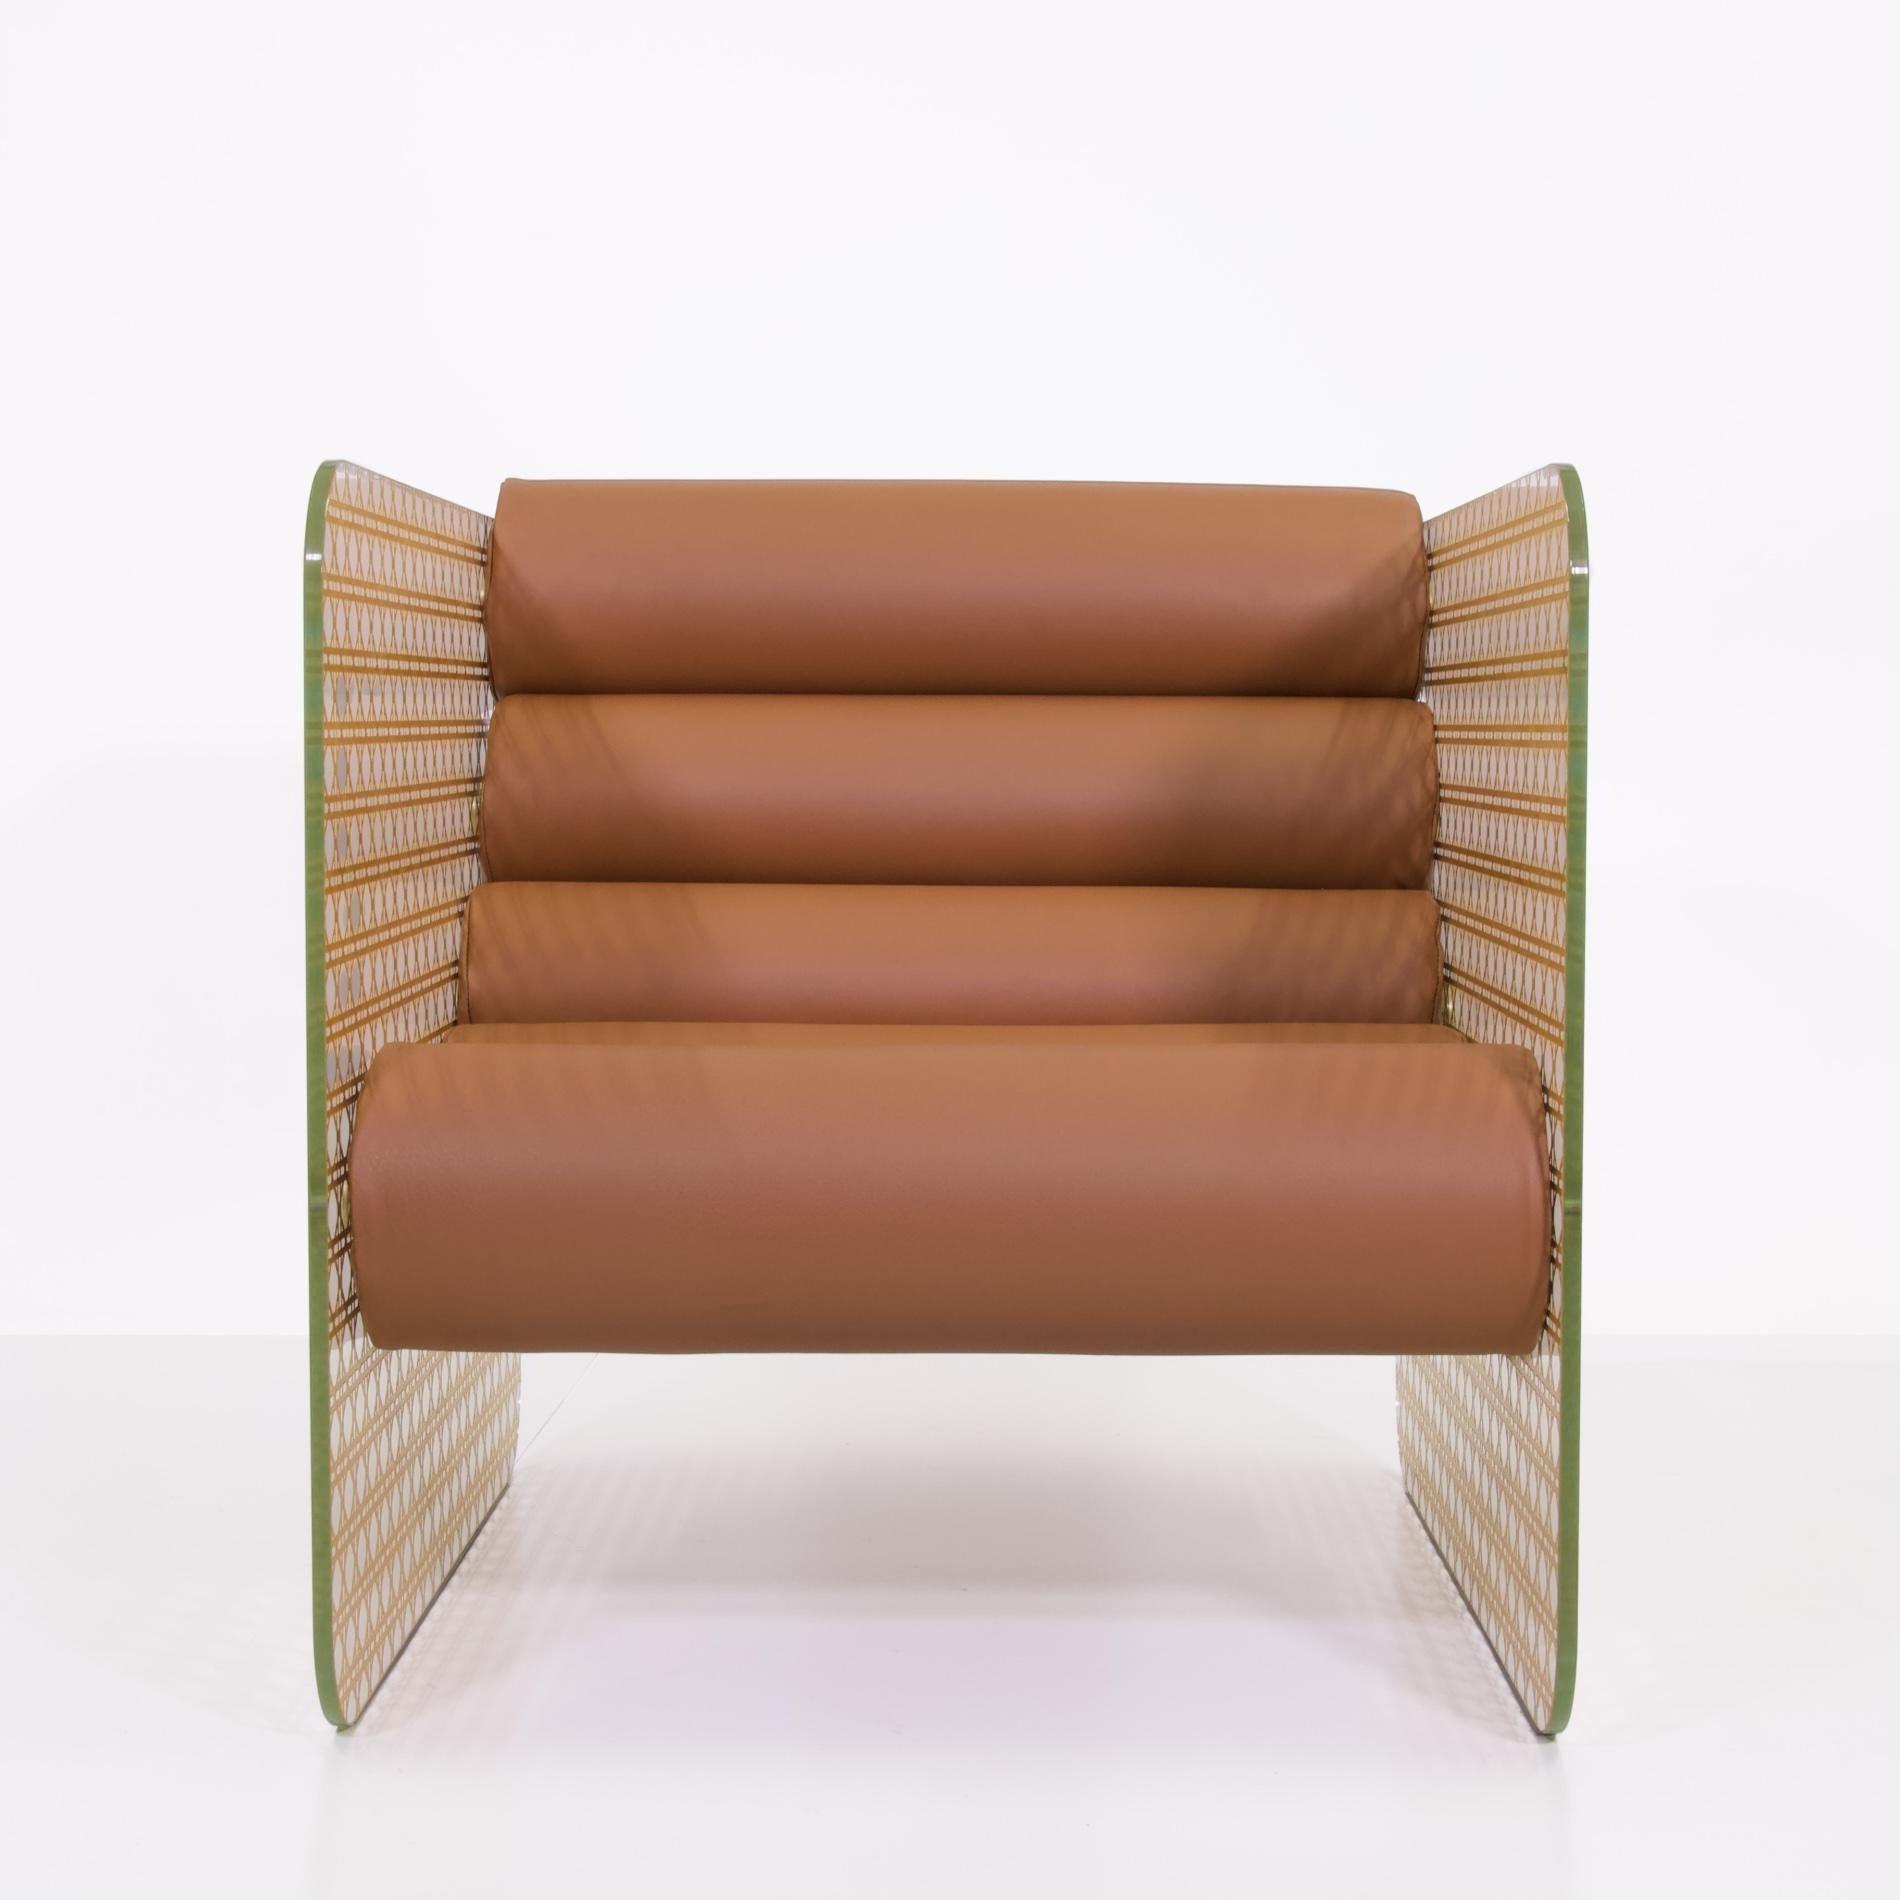 Le fauteuil MW02 Cannage gold Armchair incarne l'élégance intemporelle, symbole emblématique de Dior. Cette chaise est à la fois un havre de confort, un atout décoratif et un précieux objet de collection. Ses parois de verre, finement gravées et